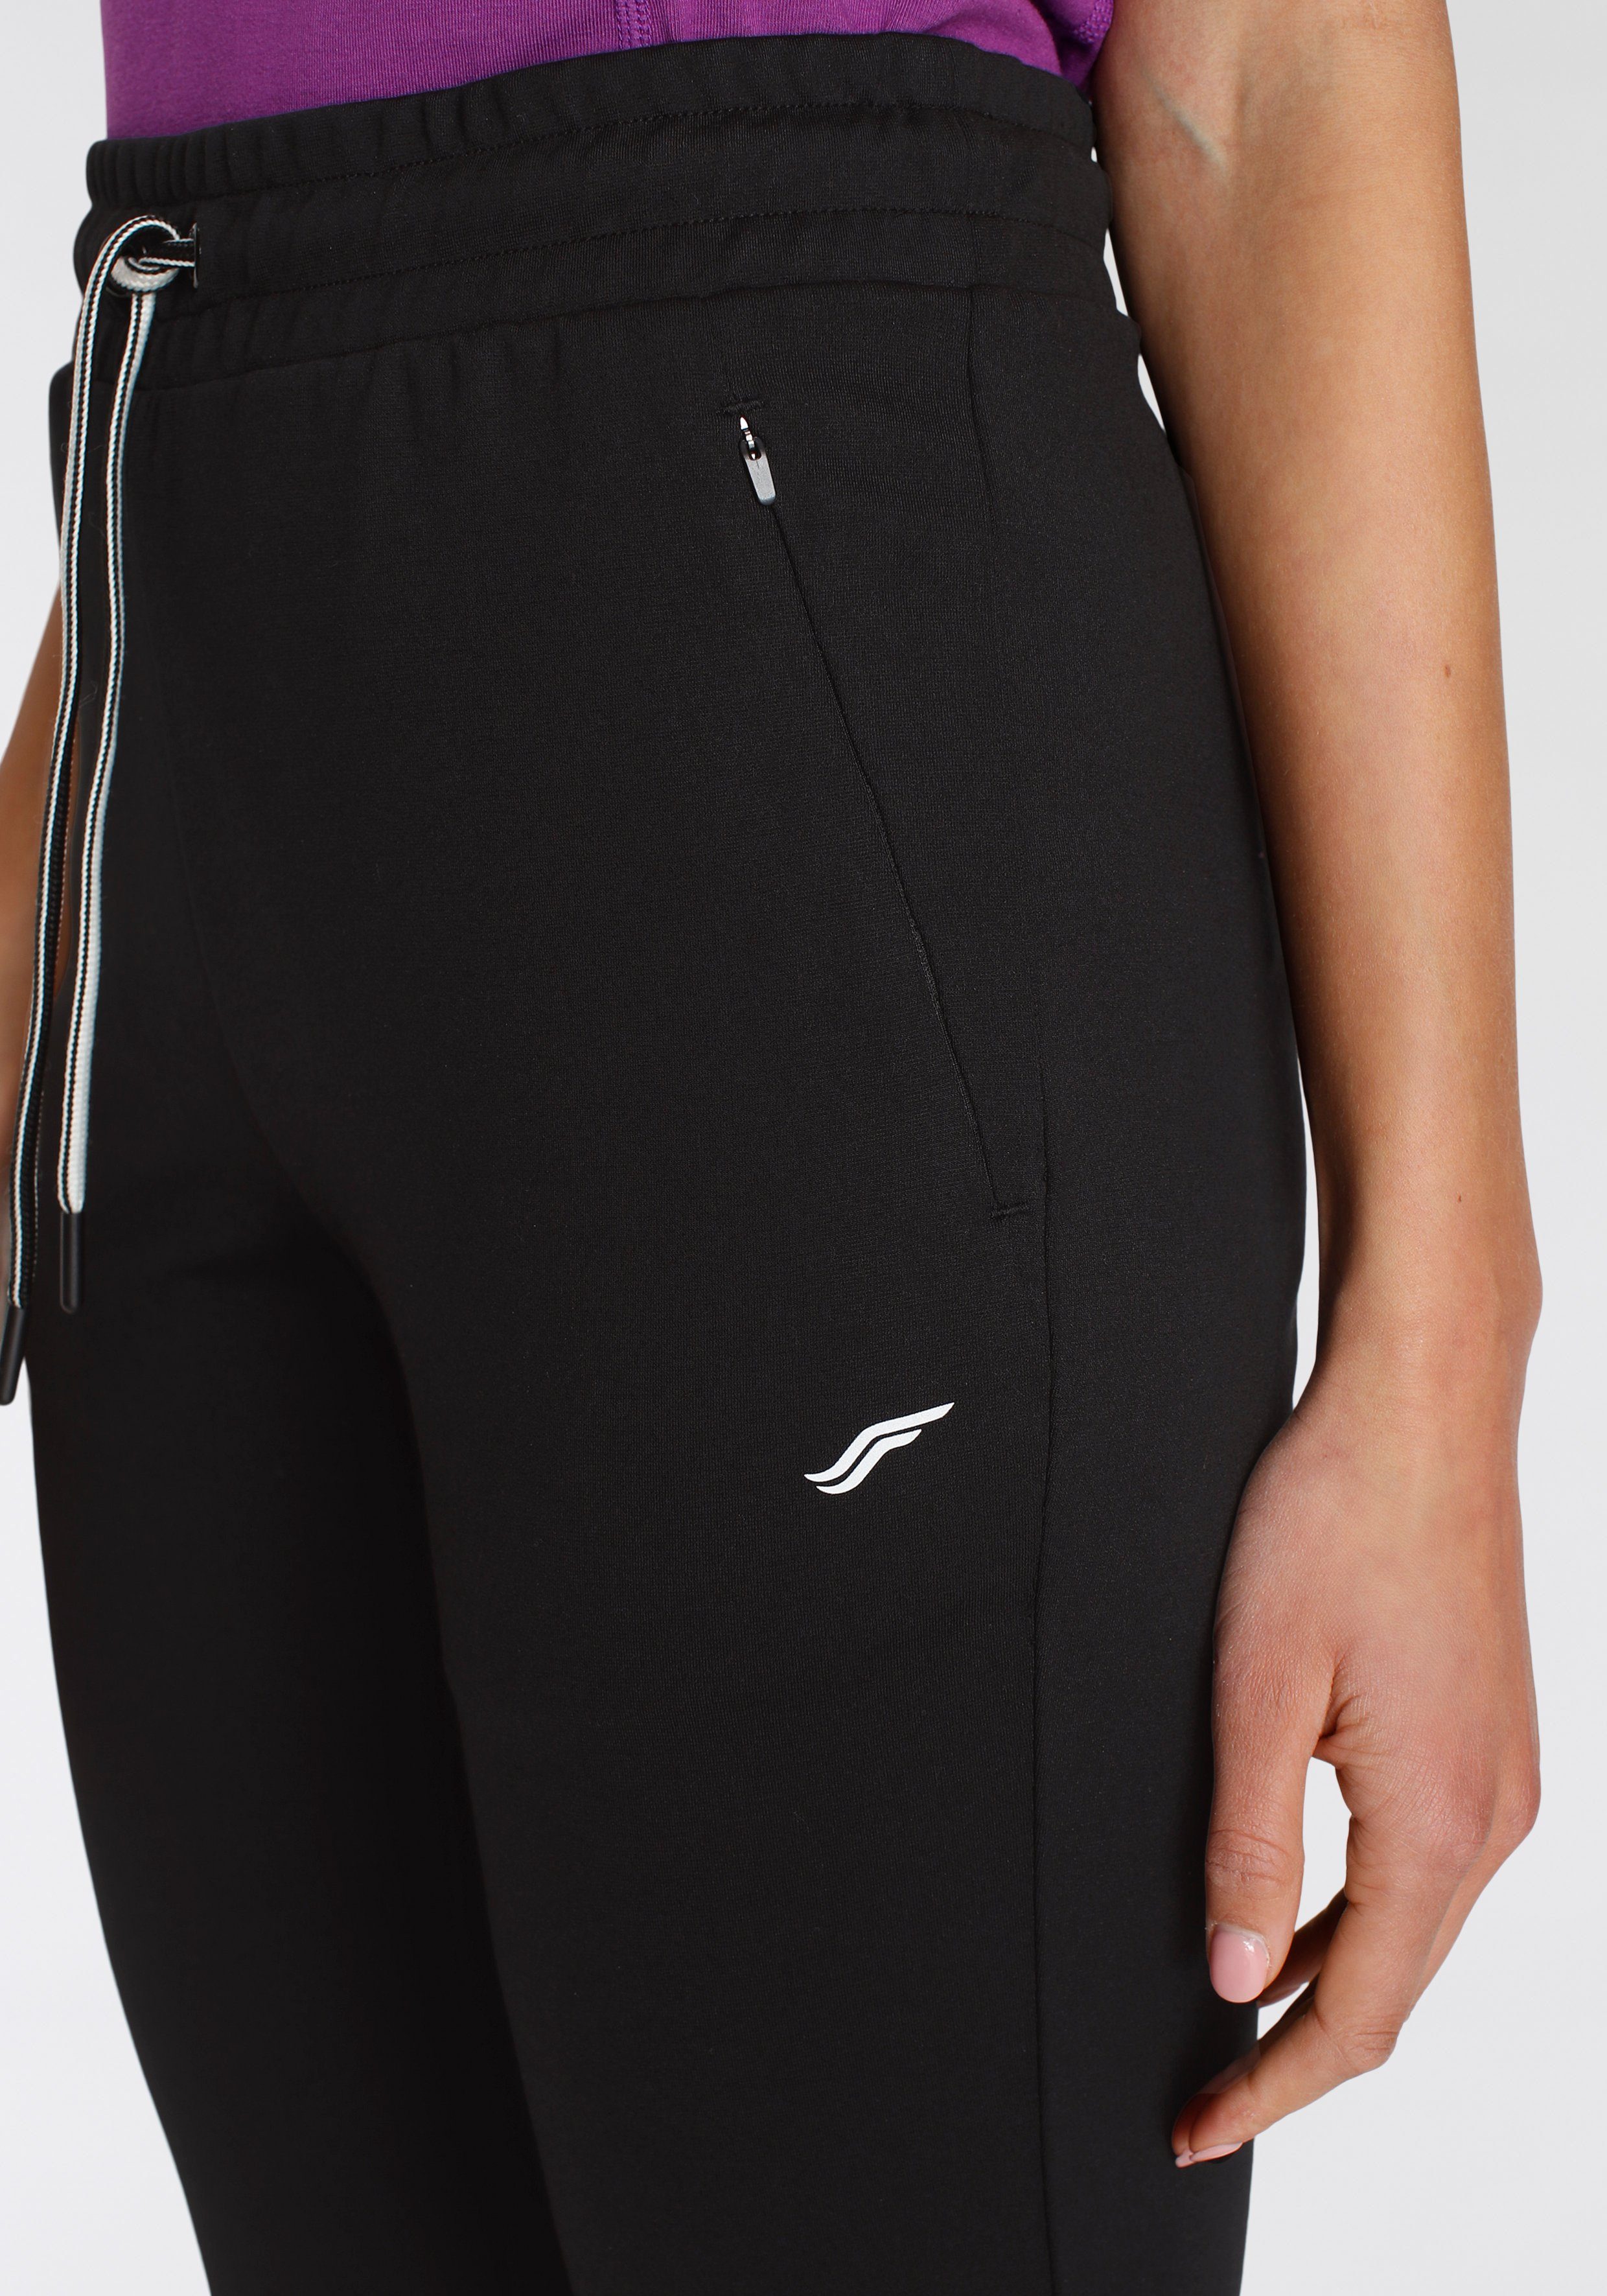 FAYN SPORTS Fit Jogginghose Reißverschlusstaschen Relaxed schwarz mit